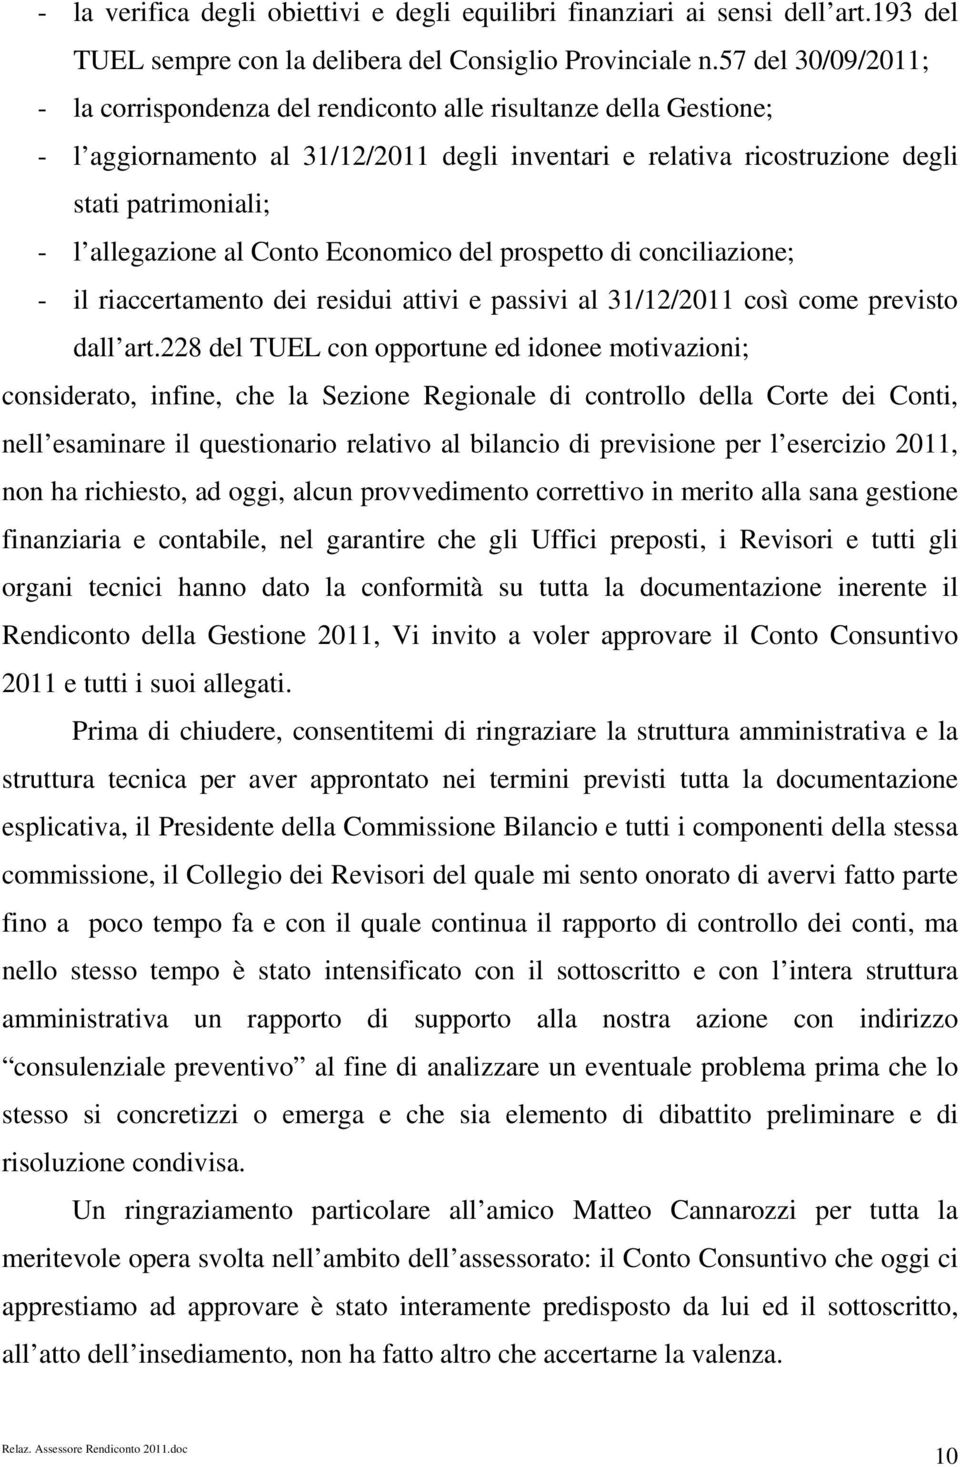 allegazione al Conto Economico del prospetto di conciliazione; - il riaccertamento dei residui attivi e passivi al 31/12/2011 così come previsto dall art.